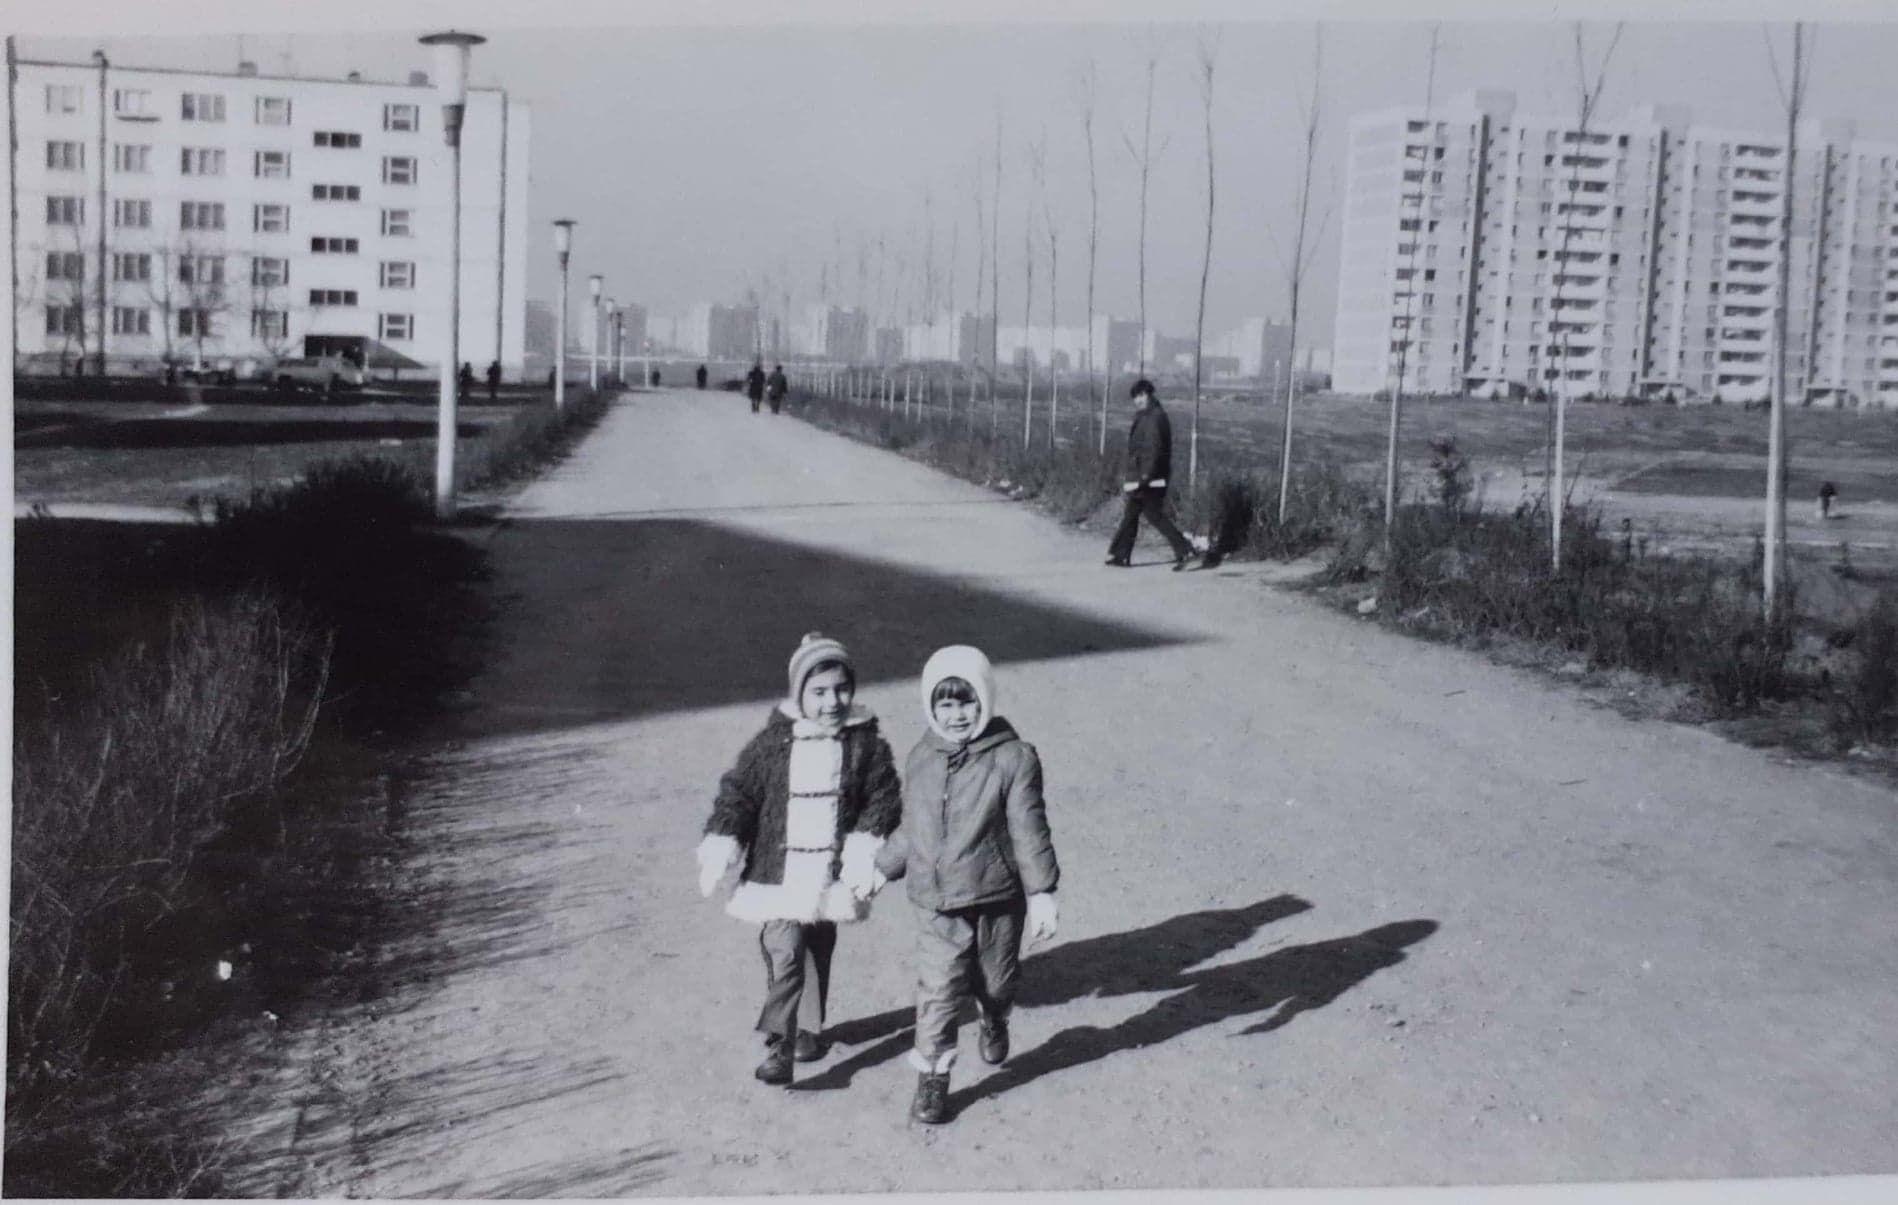 Așa arăta zona Sălăjan-Trapezului-Ozana prin anii '70. Fotografie din arhiva personală a lui Mihnea